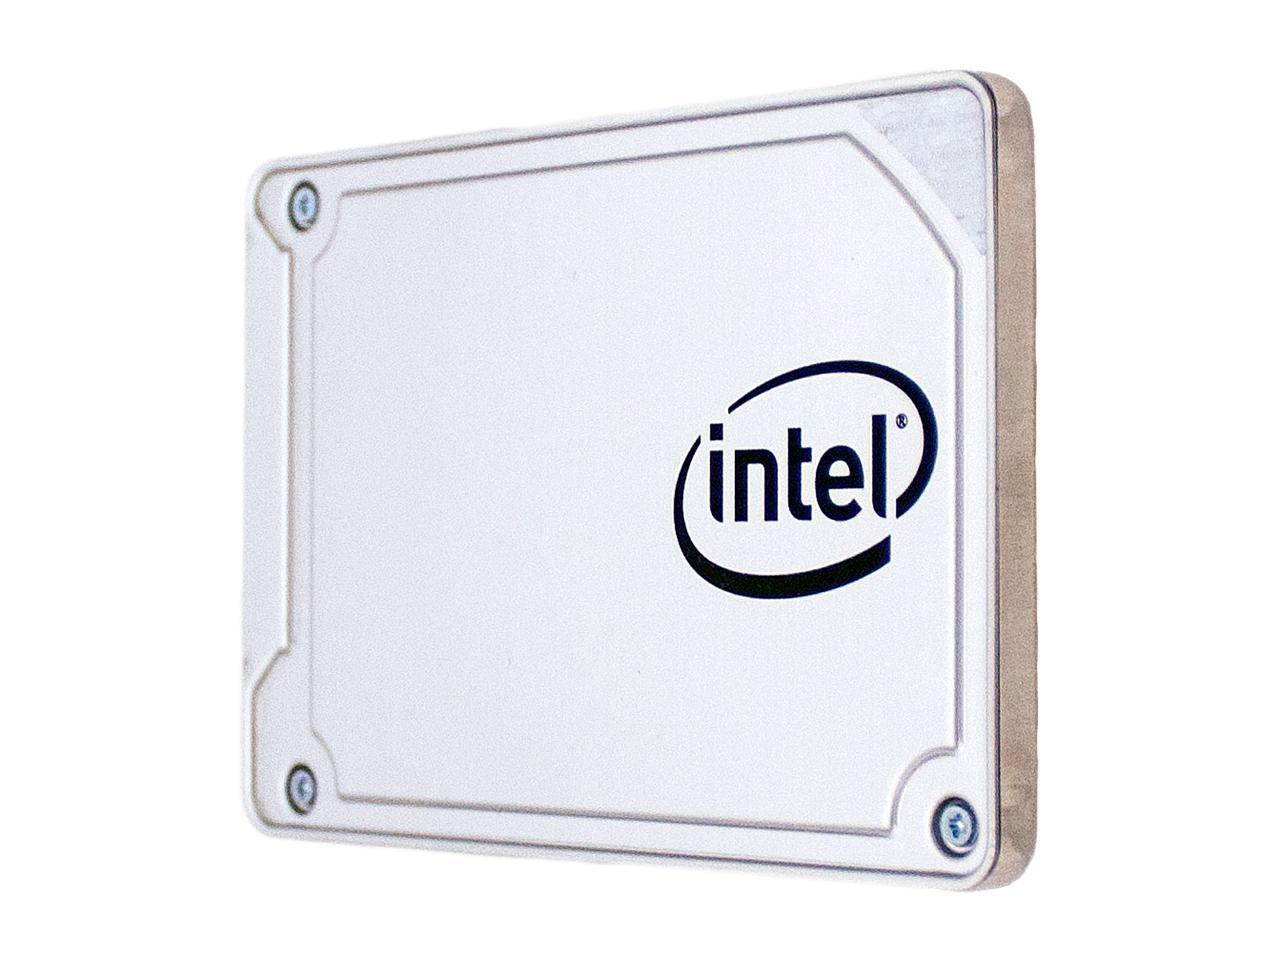 Intel 545s 2.5" 128GB SATA III 64-Layer 3D NAND TLC Internal Solid State Drive (SSD) SSDSC2KW128G8X1